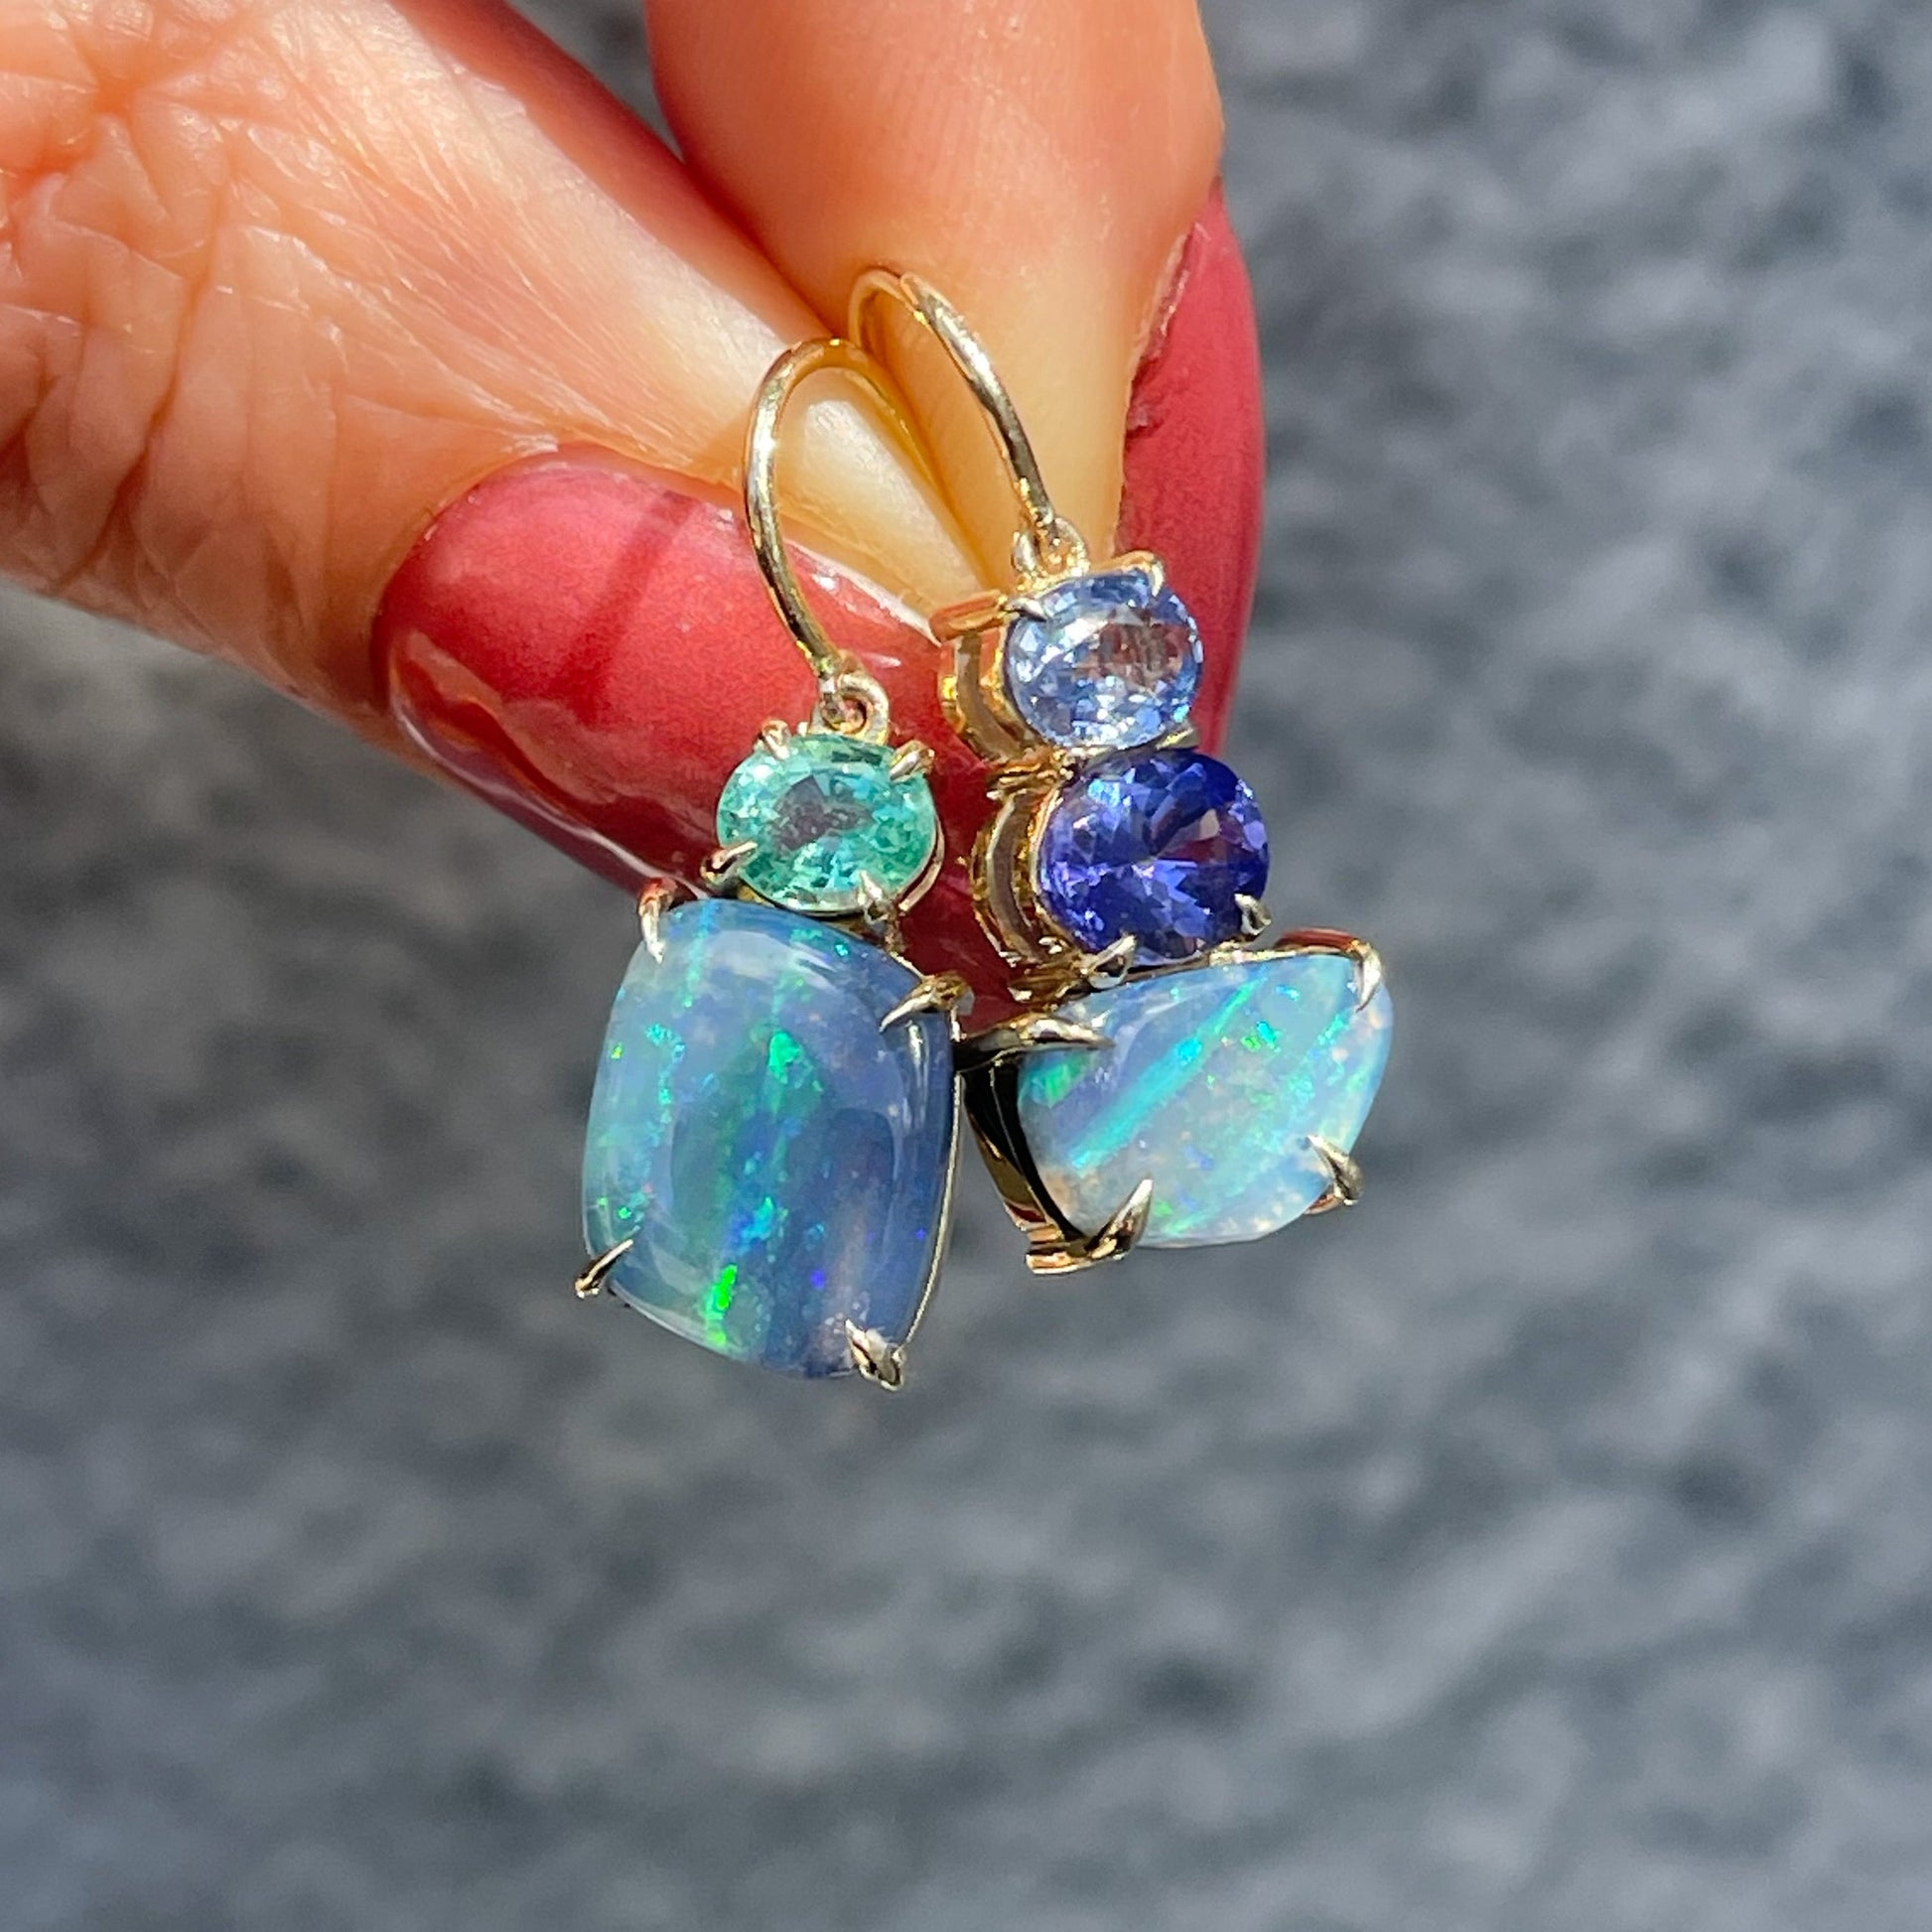 Australian Opal Earrings by NIXIN Jewelry held up in sunlight. Opal drop earrings with emerald and sapphire.